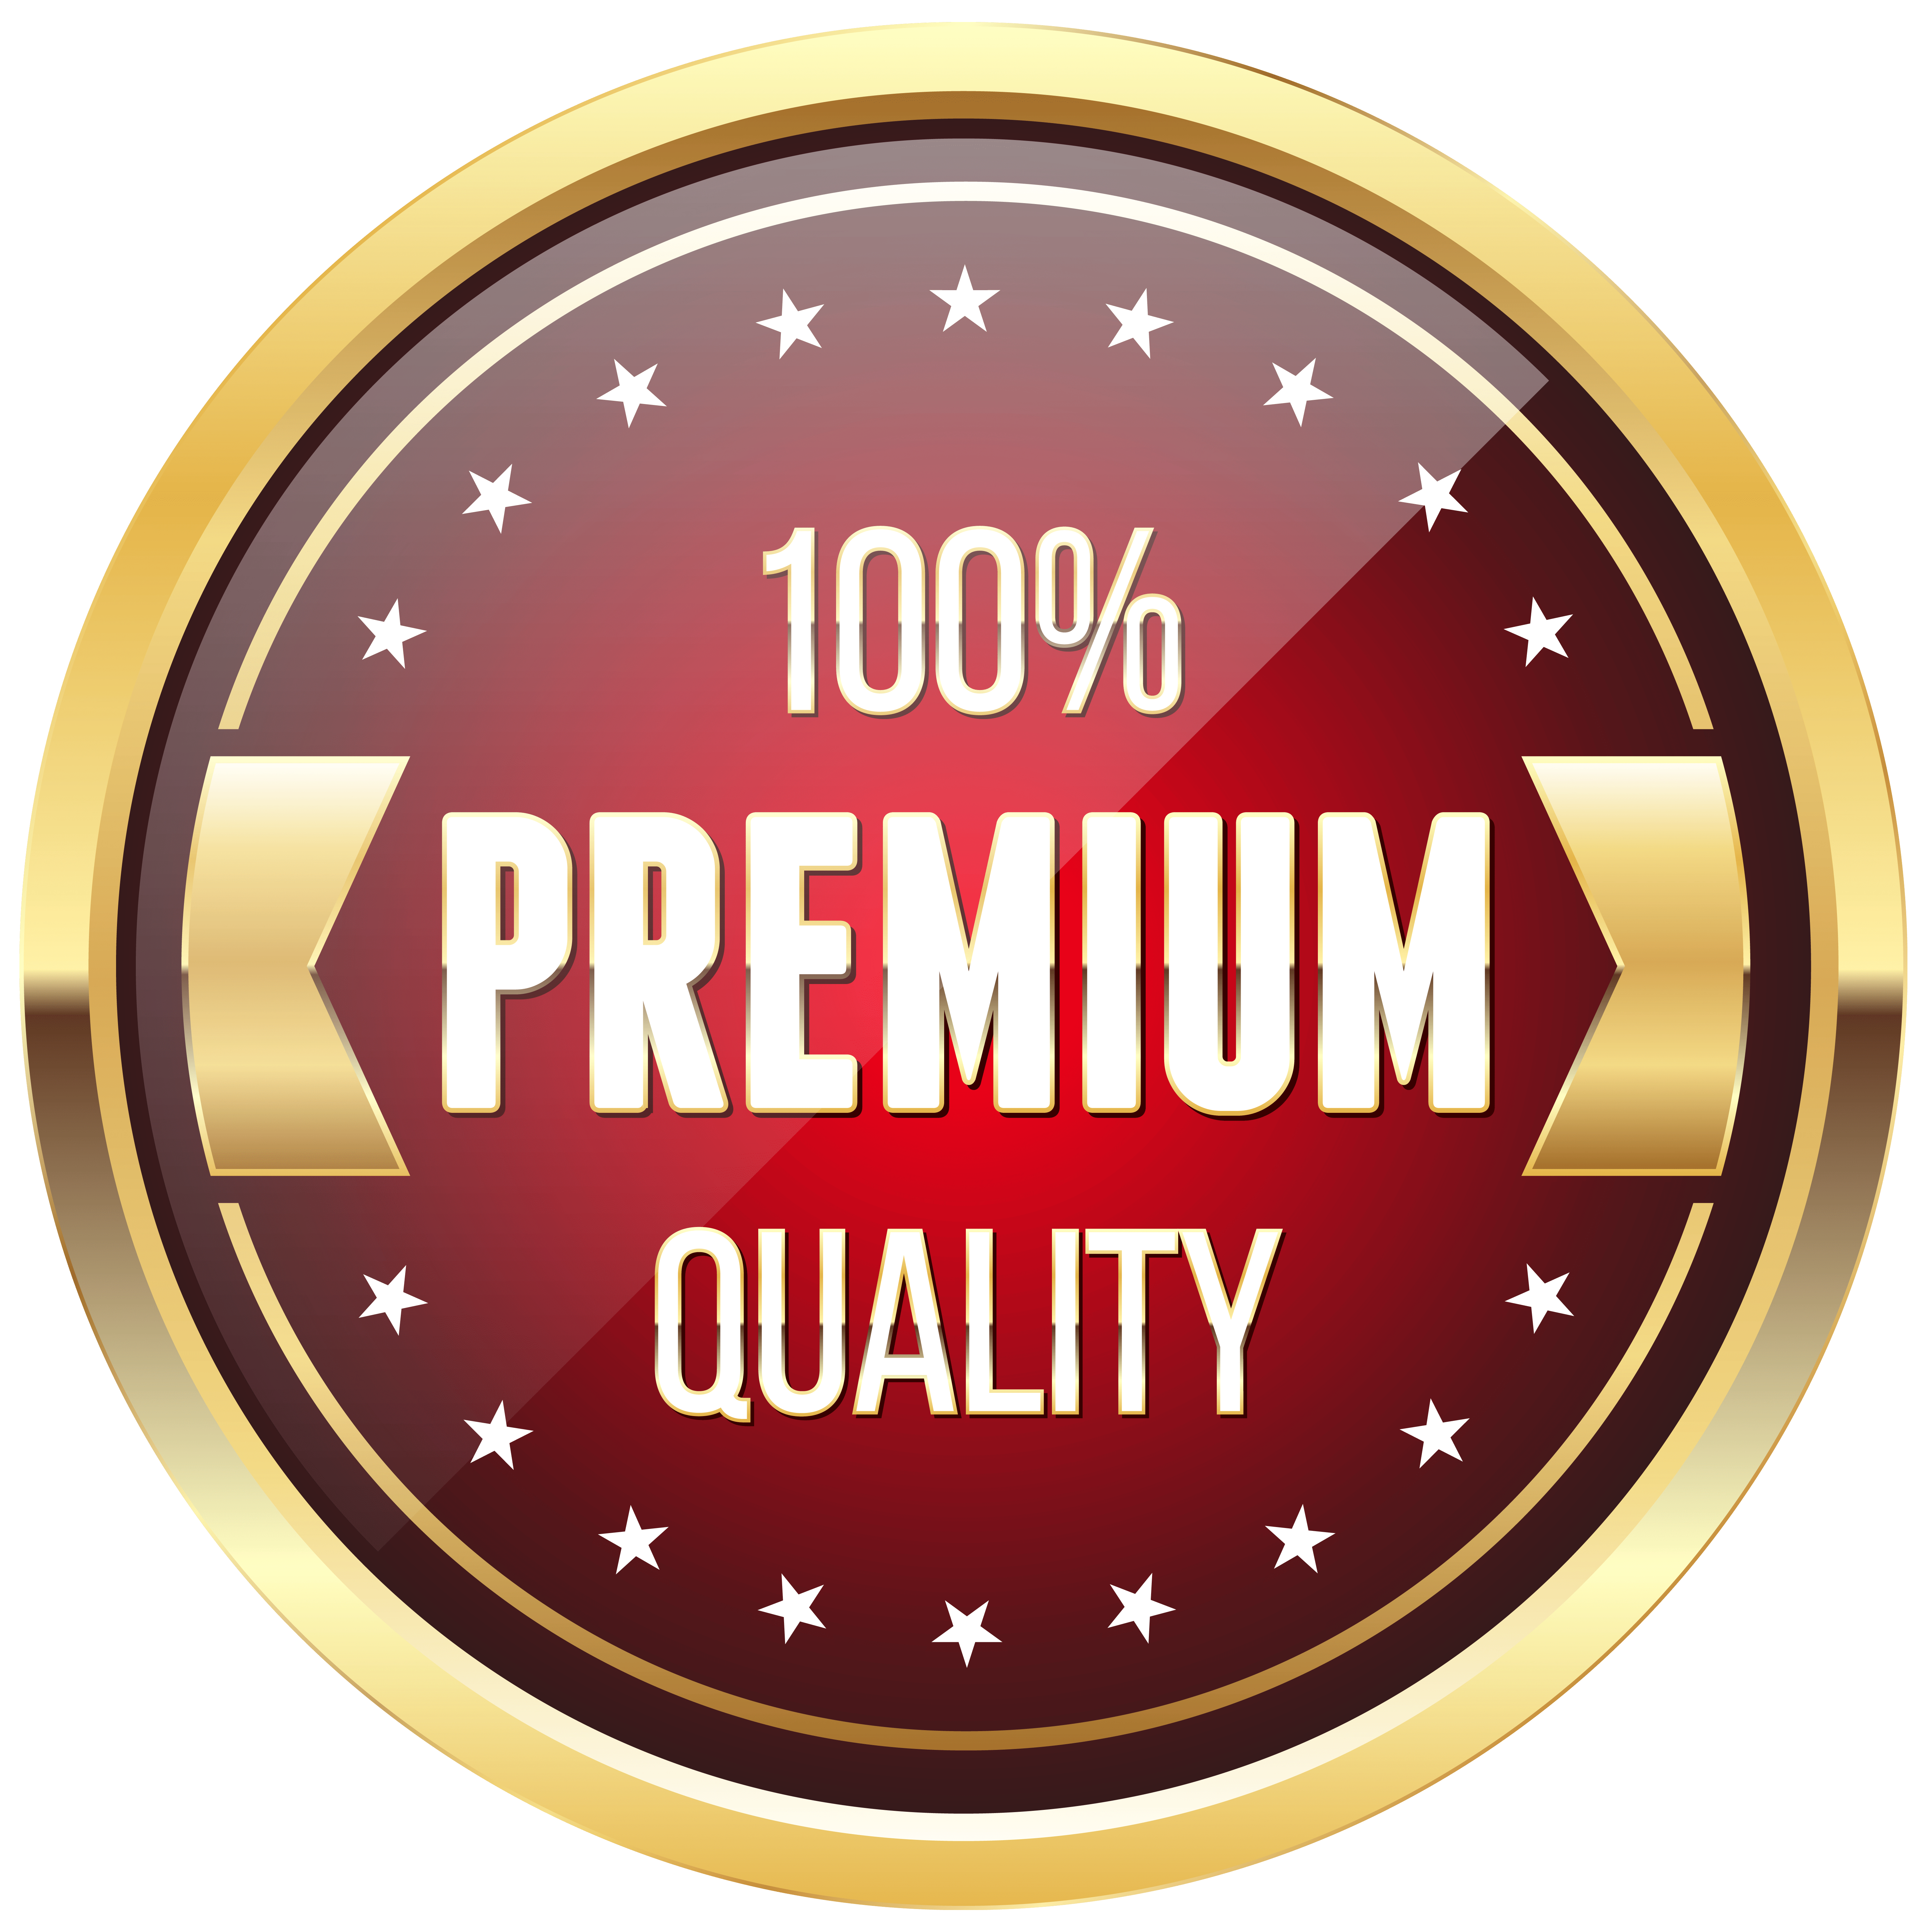 Cds Premium